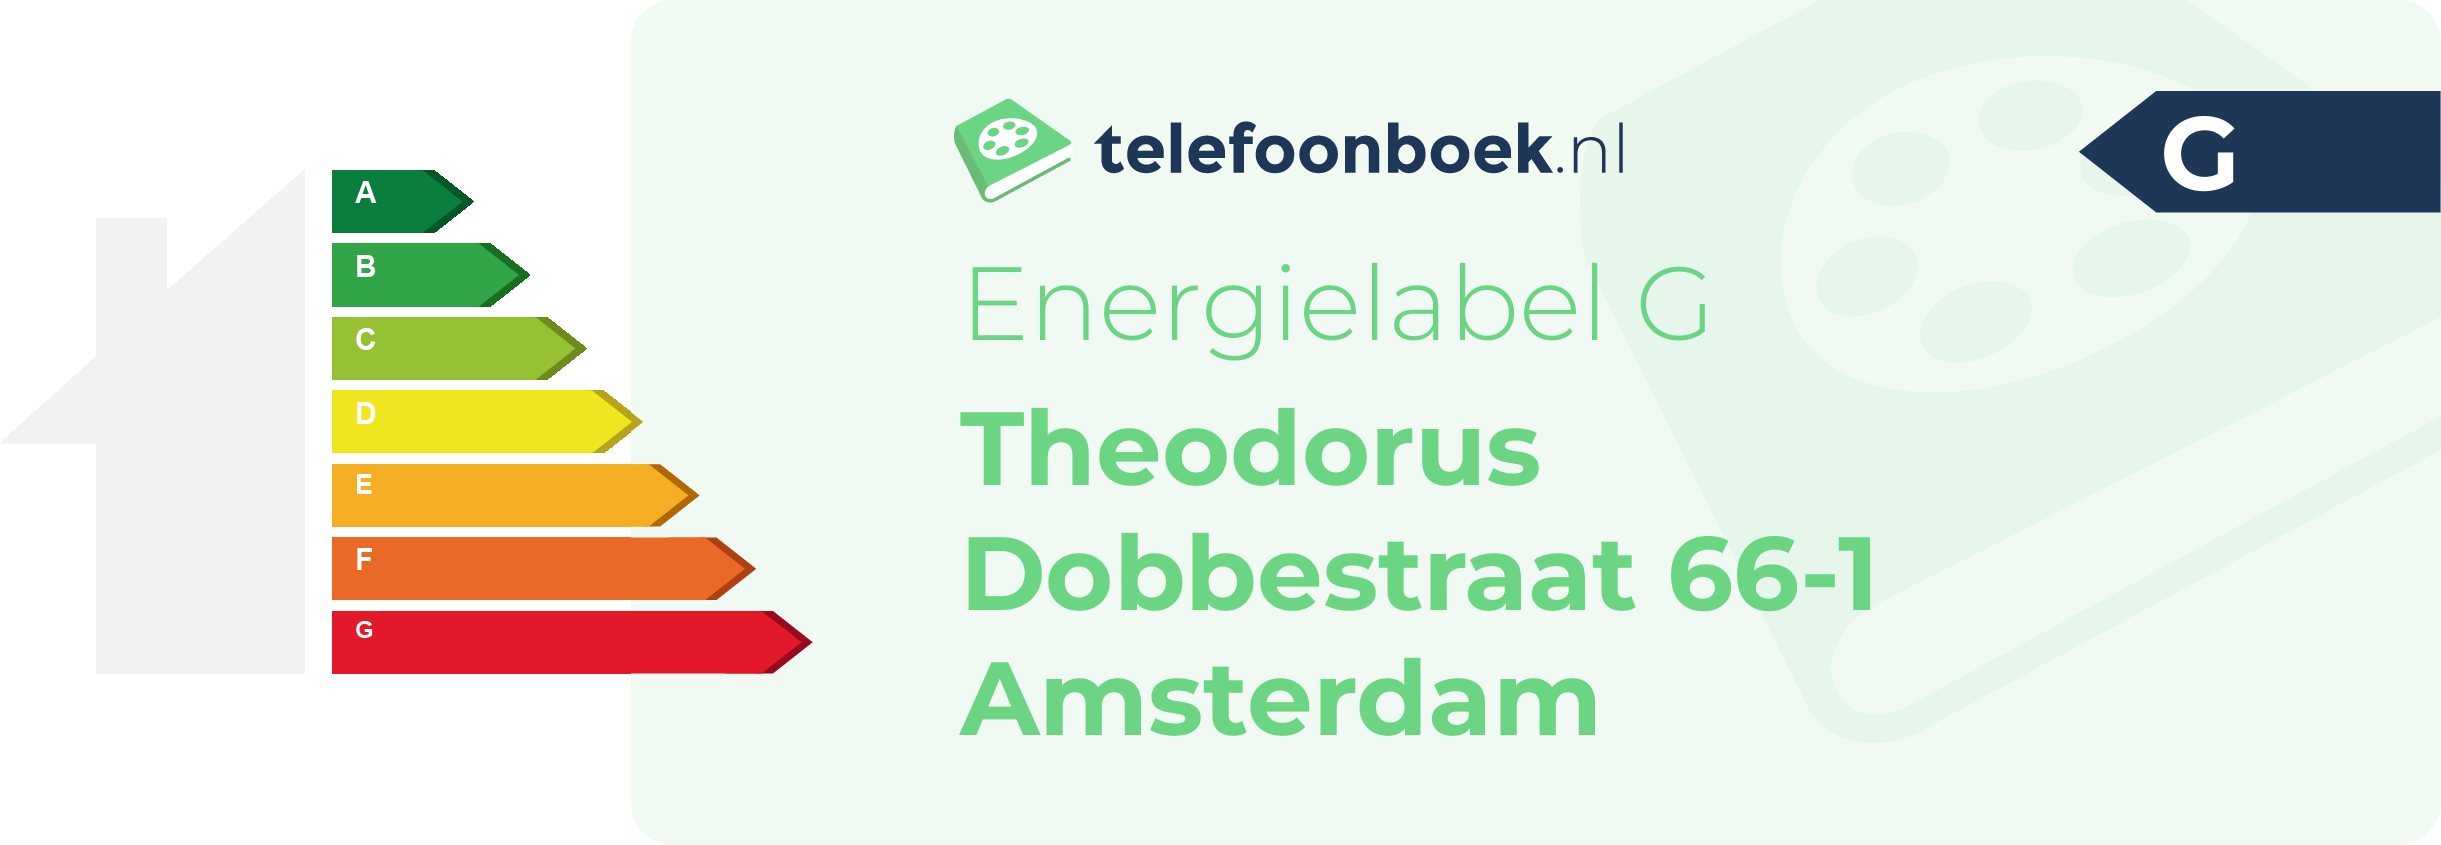 Energielabel Theodorus Dobbestraat 66-1 Amsterdam